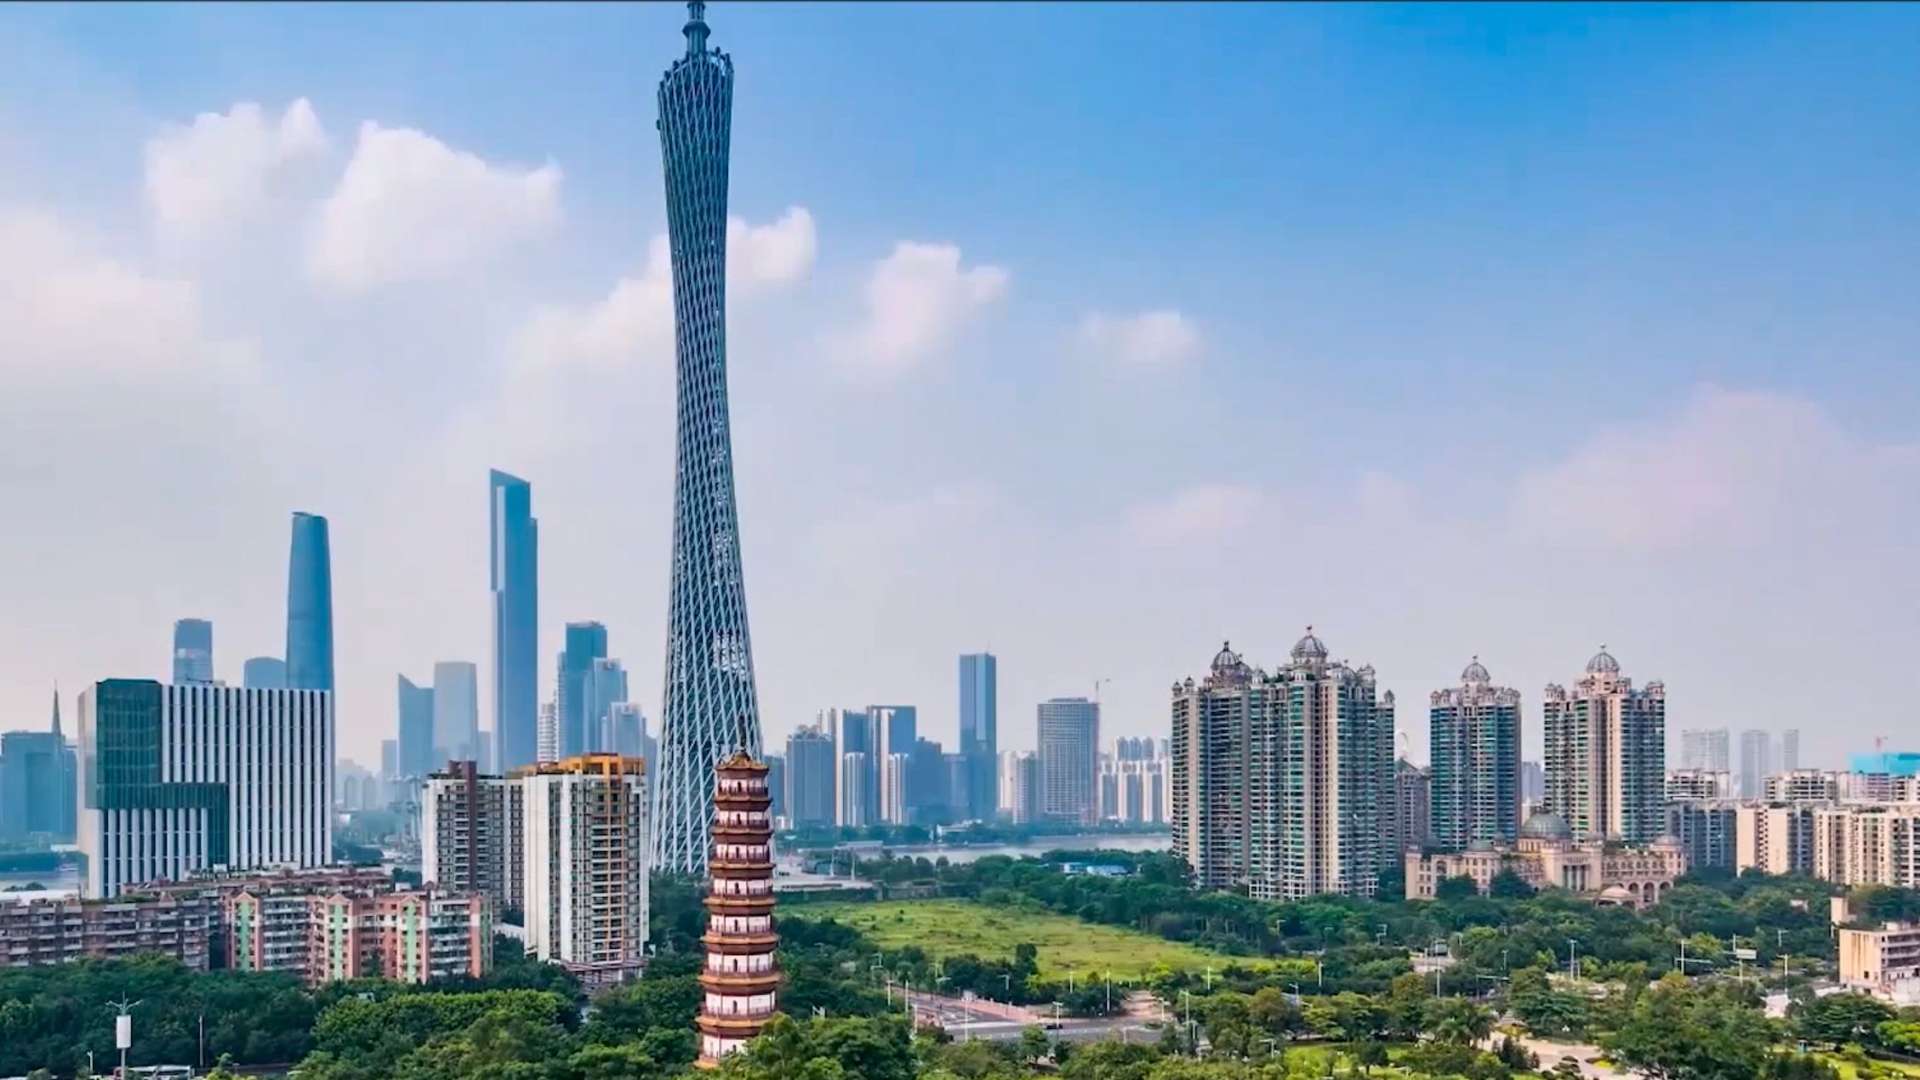 橙天玩影视丨深圳华工能源园区视频 企业宣传片 碳中和-碳达峰